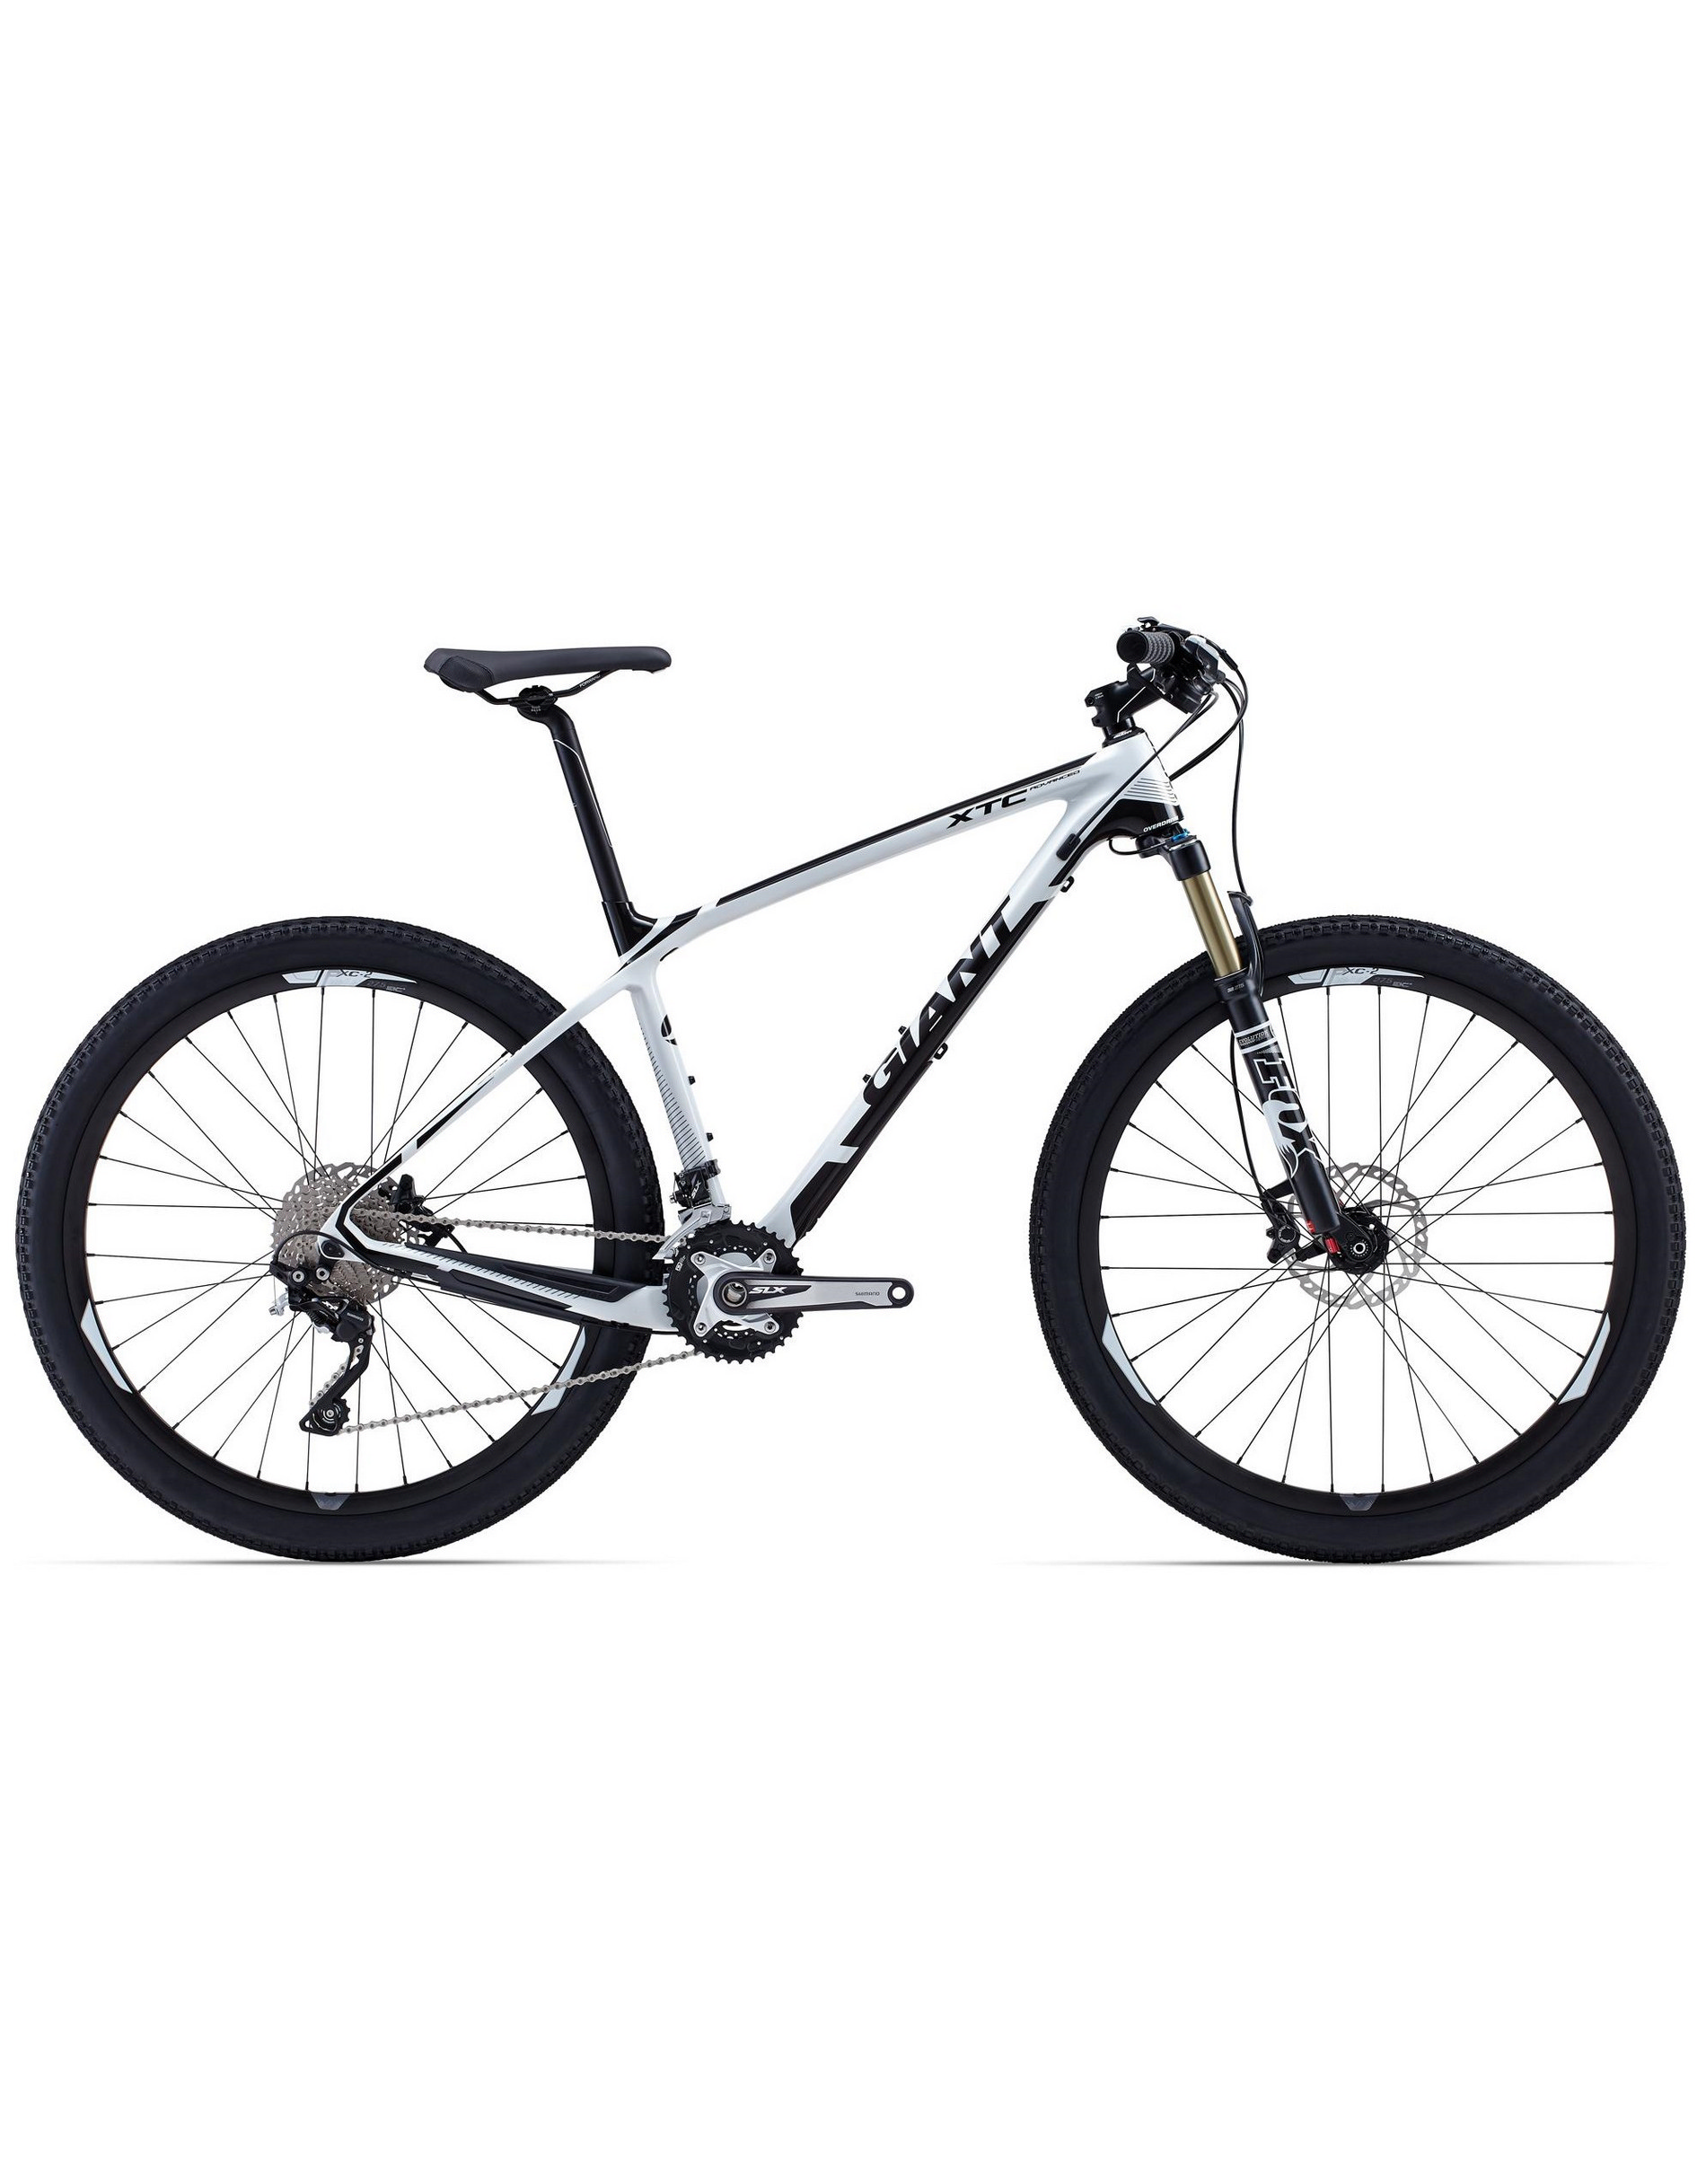 GIANT Велосипед XTC ADVANCED 2 27.5" 2015 Артикул: 5003041